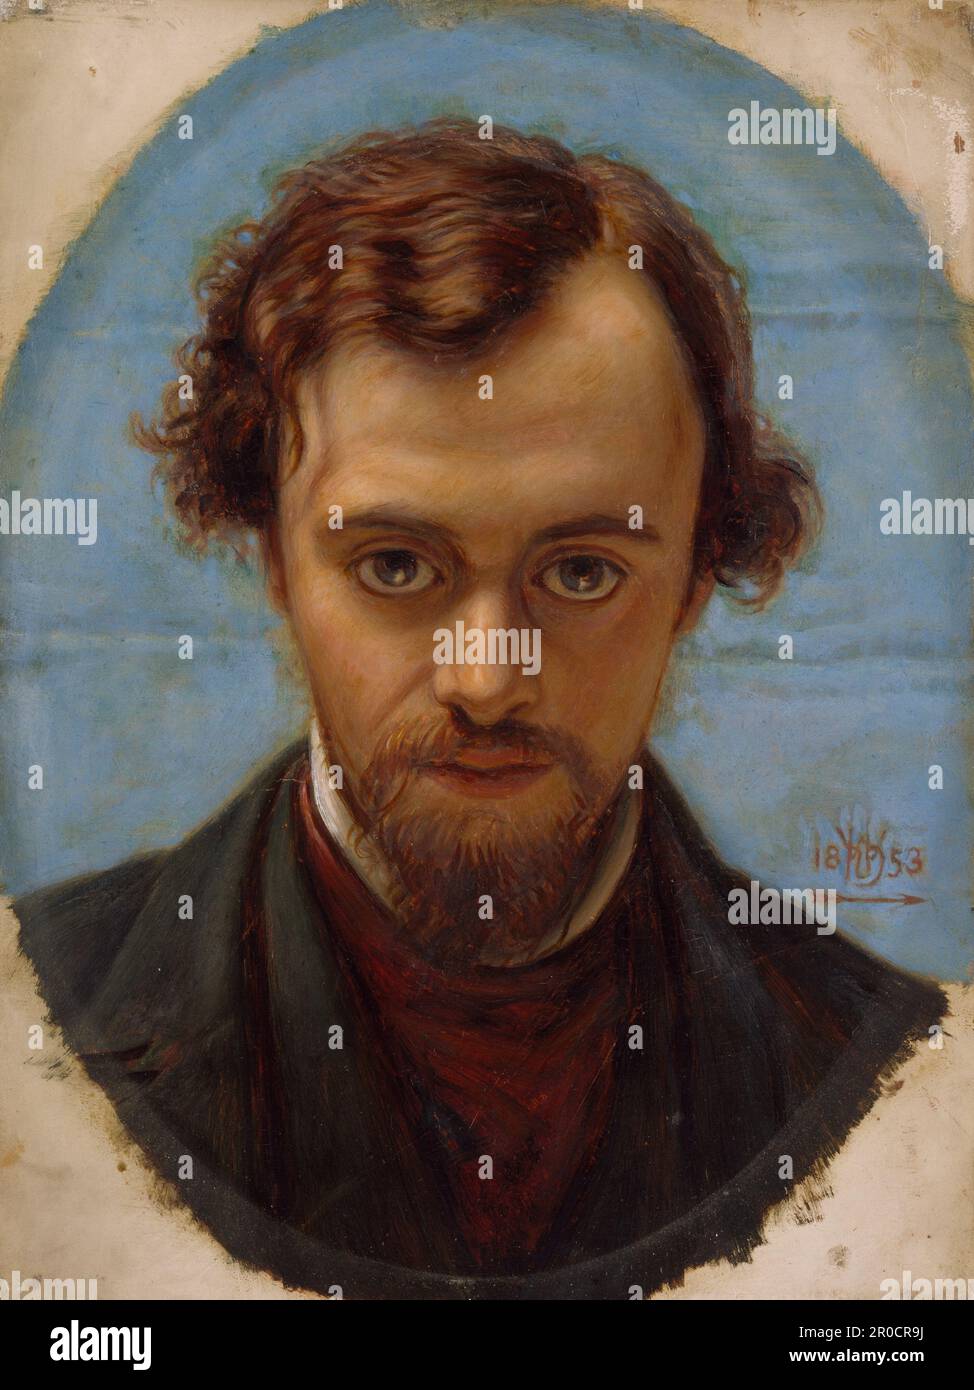 Portrait de Dante Gabriel Rossetti à 22 ans, 1882-1883. Artiste: William Holman Hunt.. Le tableau montre Rossetti à 22 ans, mais ce portrait a été créé après la mort de Rossetti en 1882 à l'âge de 53 ans. Il a été basé sur un dessin à la craie de la même taille Holman Hunt créé en 1853. Banque D'Images